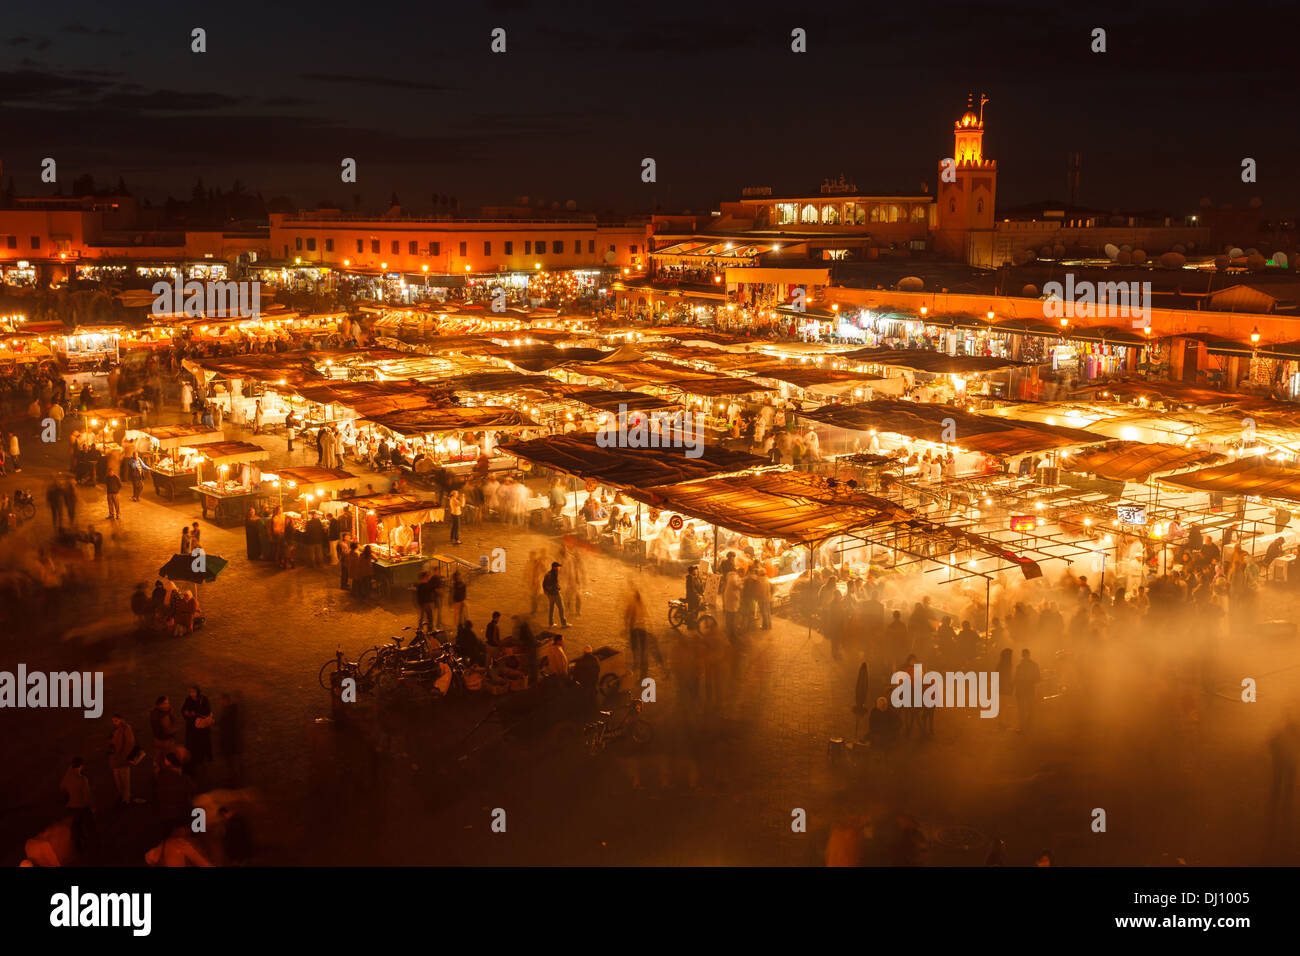 Vista aerea delle grandi città, mercato all'aperto con il minareto della moschea illuminata luminosamente in background di notte a Marrakech in Marocco Foto Stock